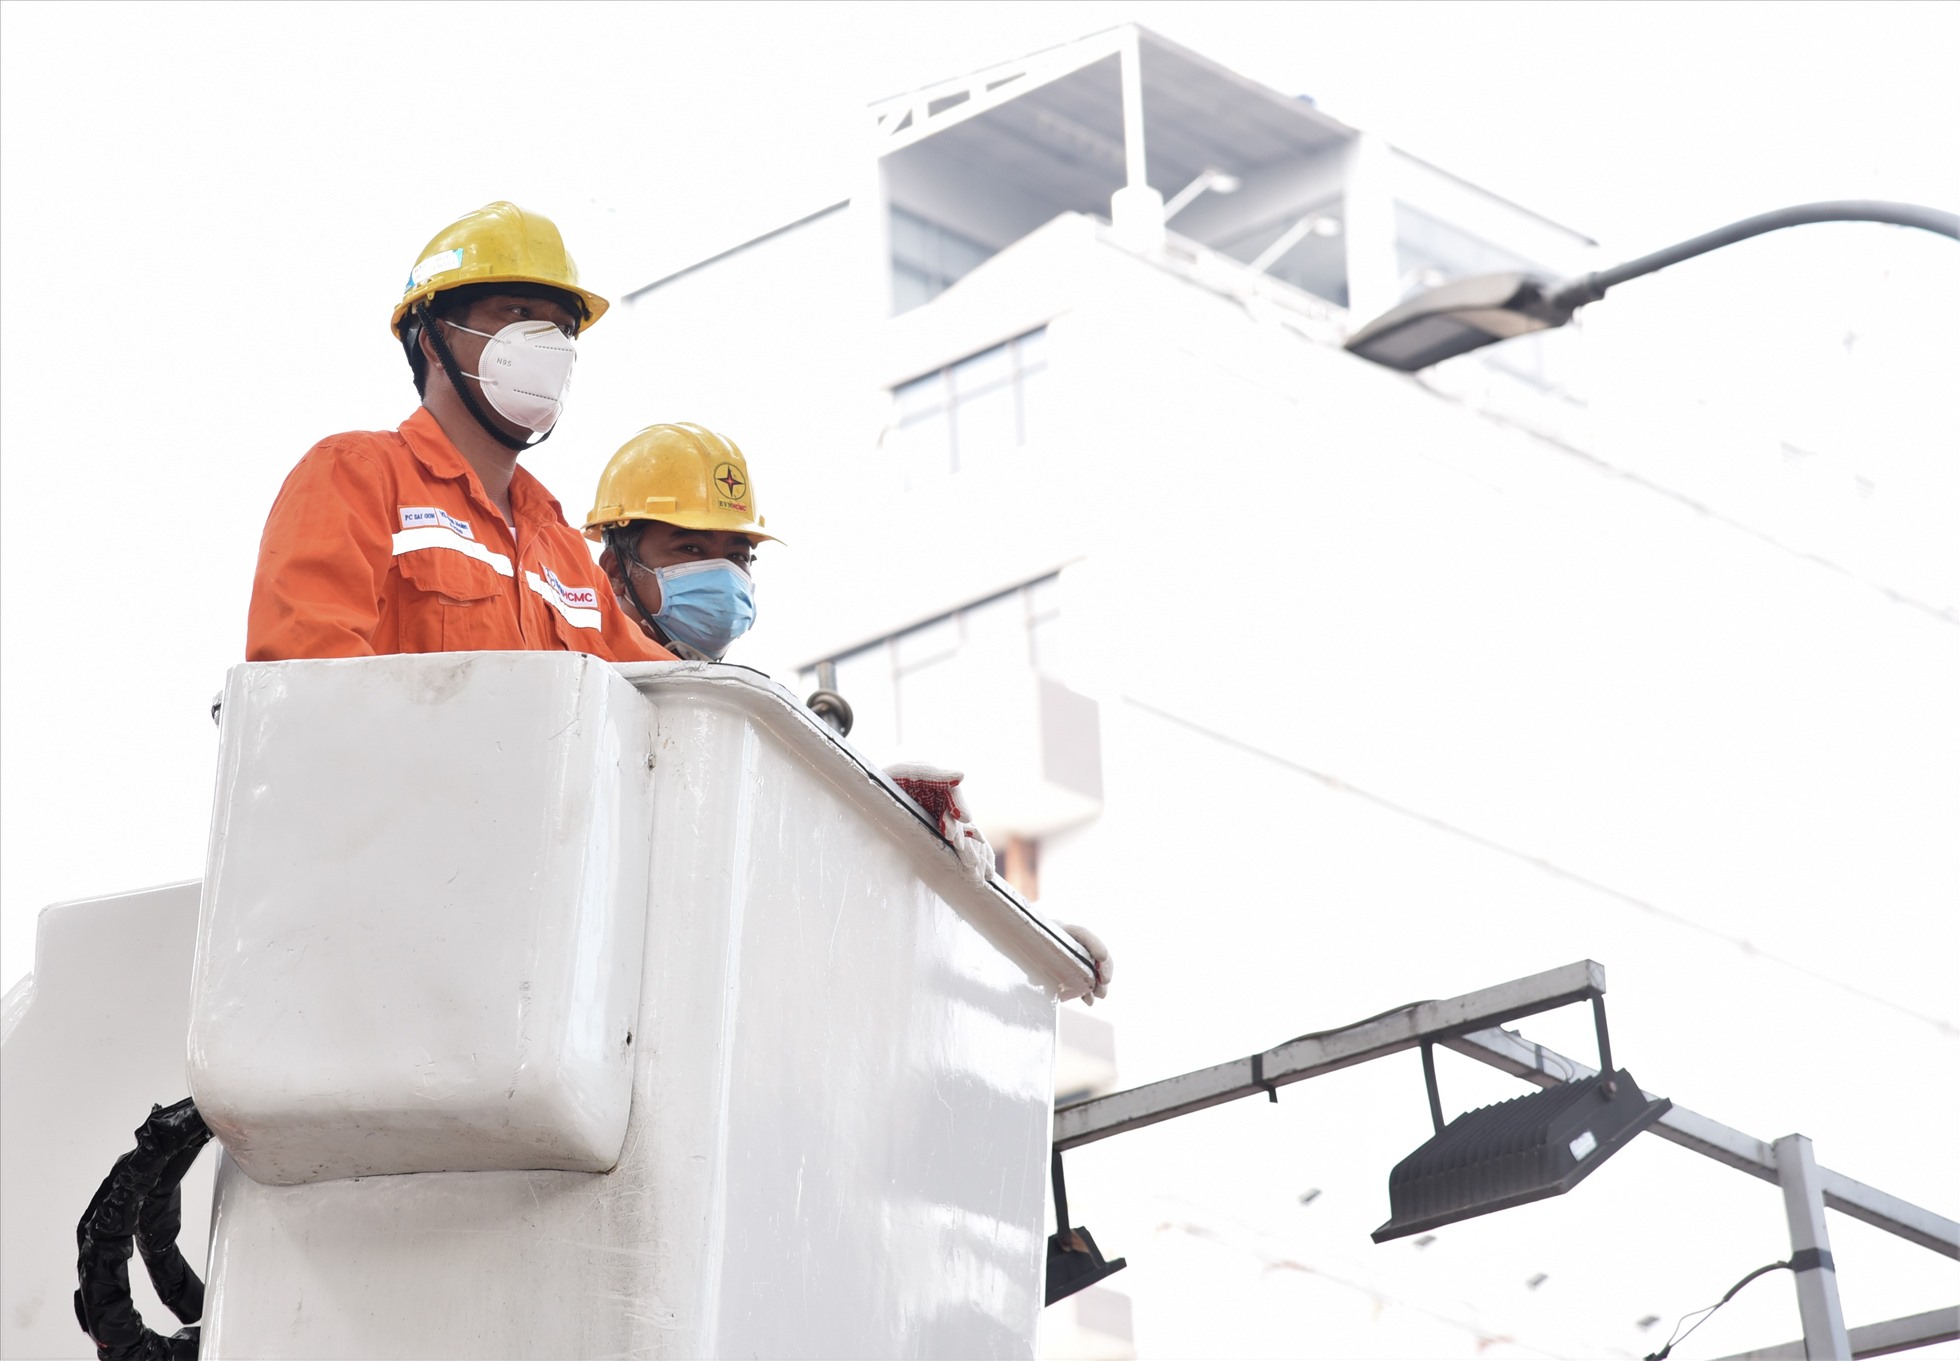 Khi thi công các công trình sửa chữa, bảo trì và xây dựng mới lưới điện, EVNHCMC sẽ áp dụng triệt để các giải pháp không gây mất điện cho khách hàng. Ảnh: Nam Dương